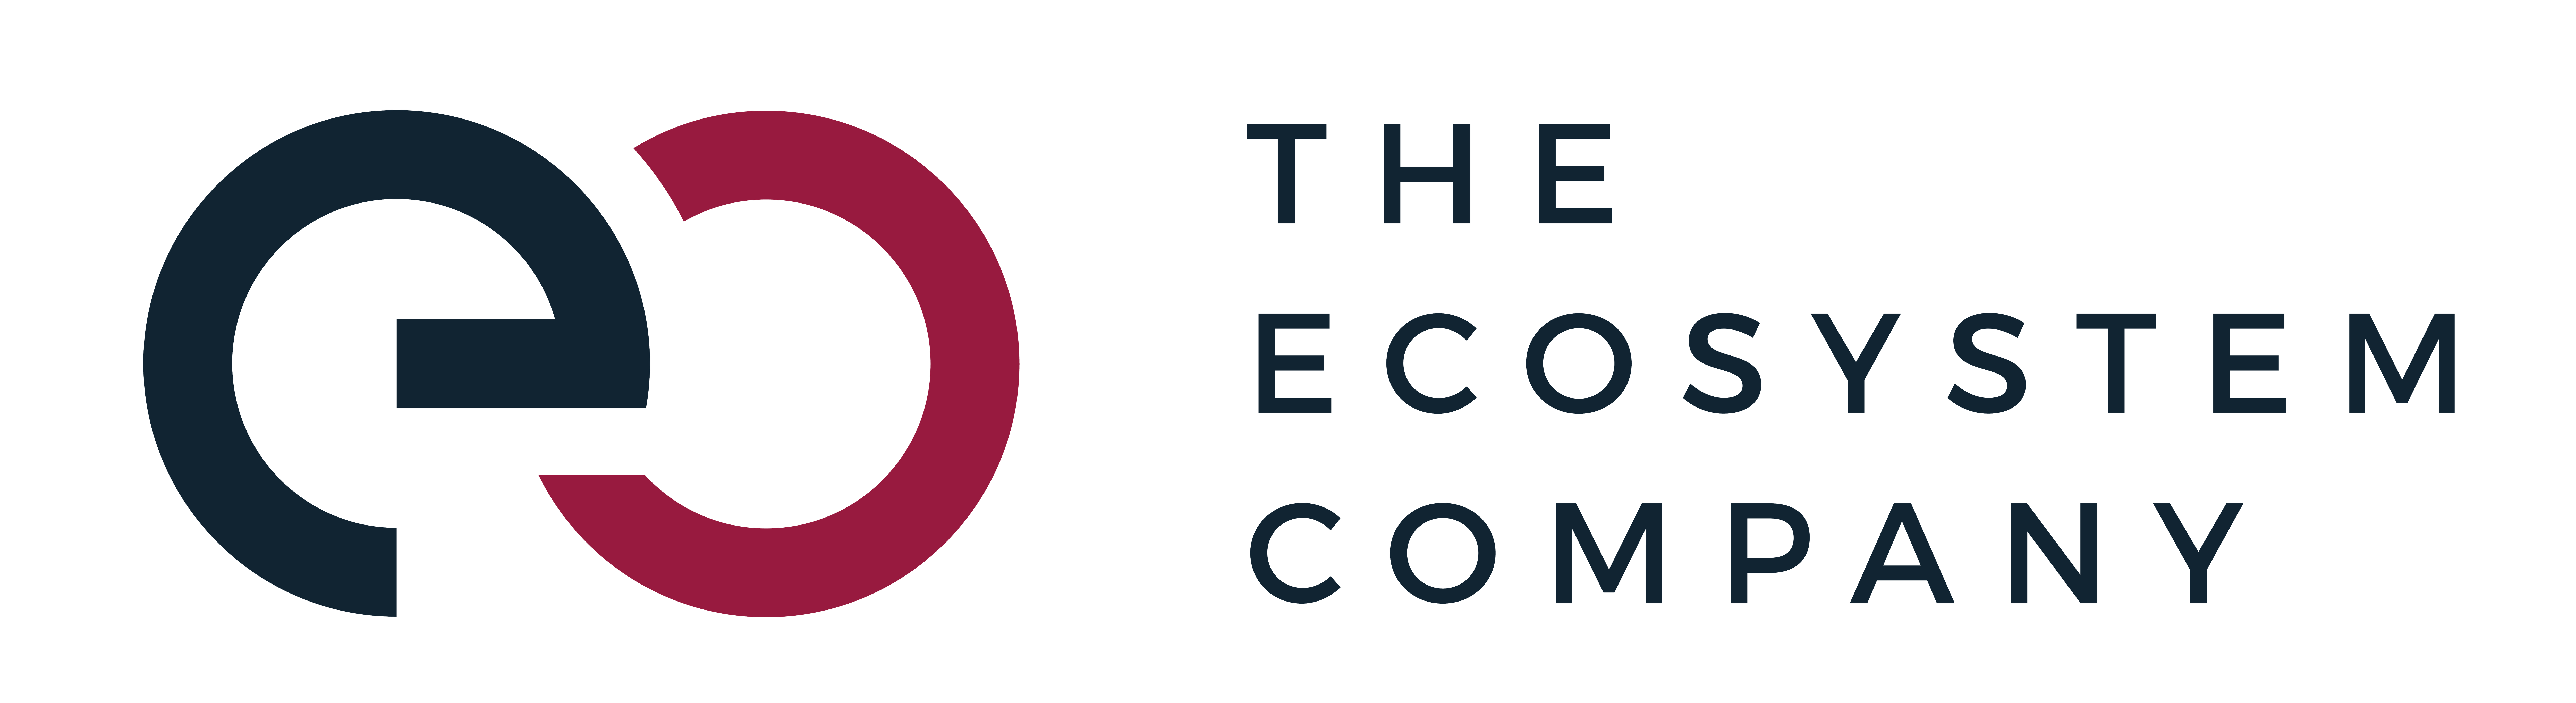 The-Ecosystem-Company-Logo